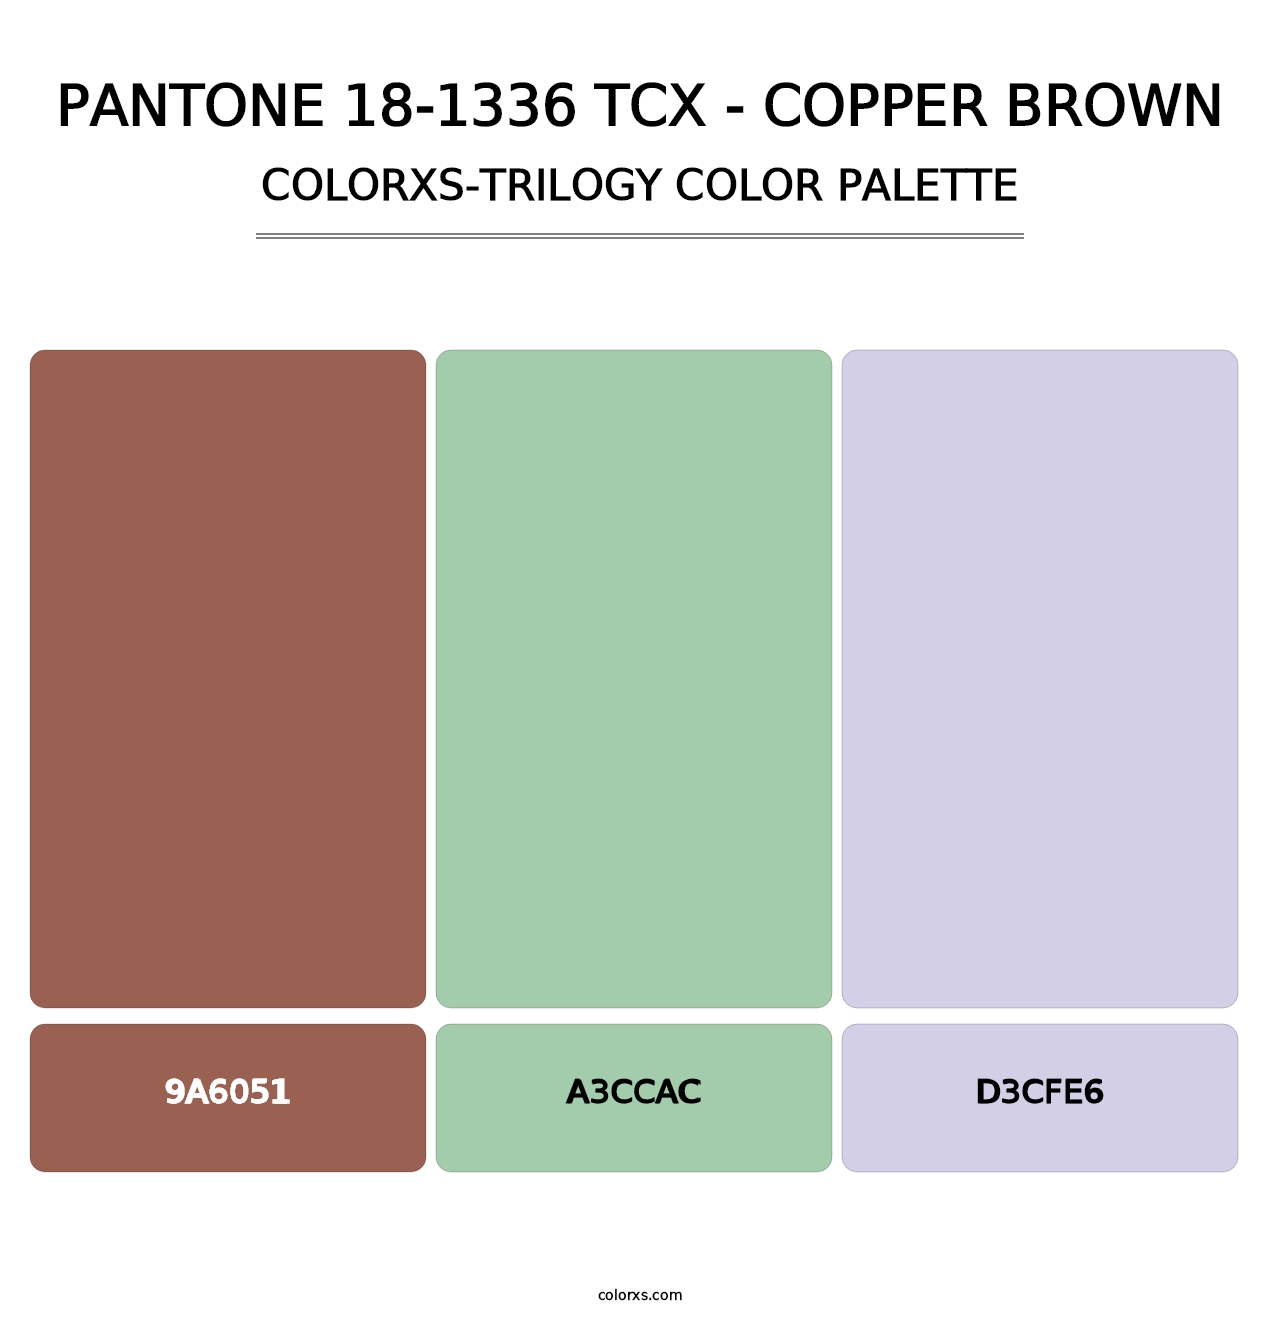 PANTONE 18-1336 TCX - Copper Brown - Colorxs Trilogy Palette